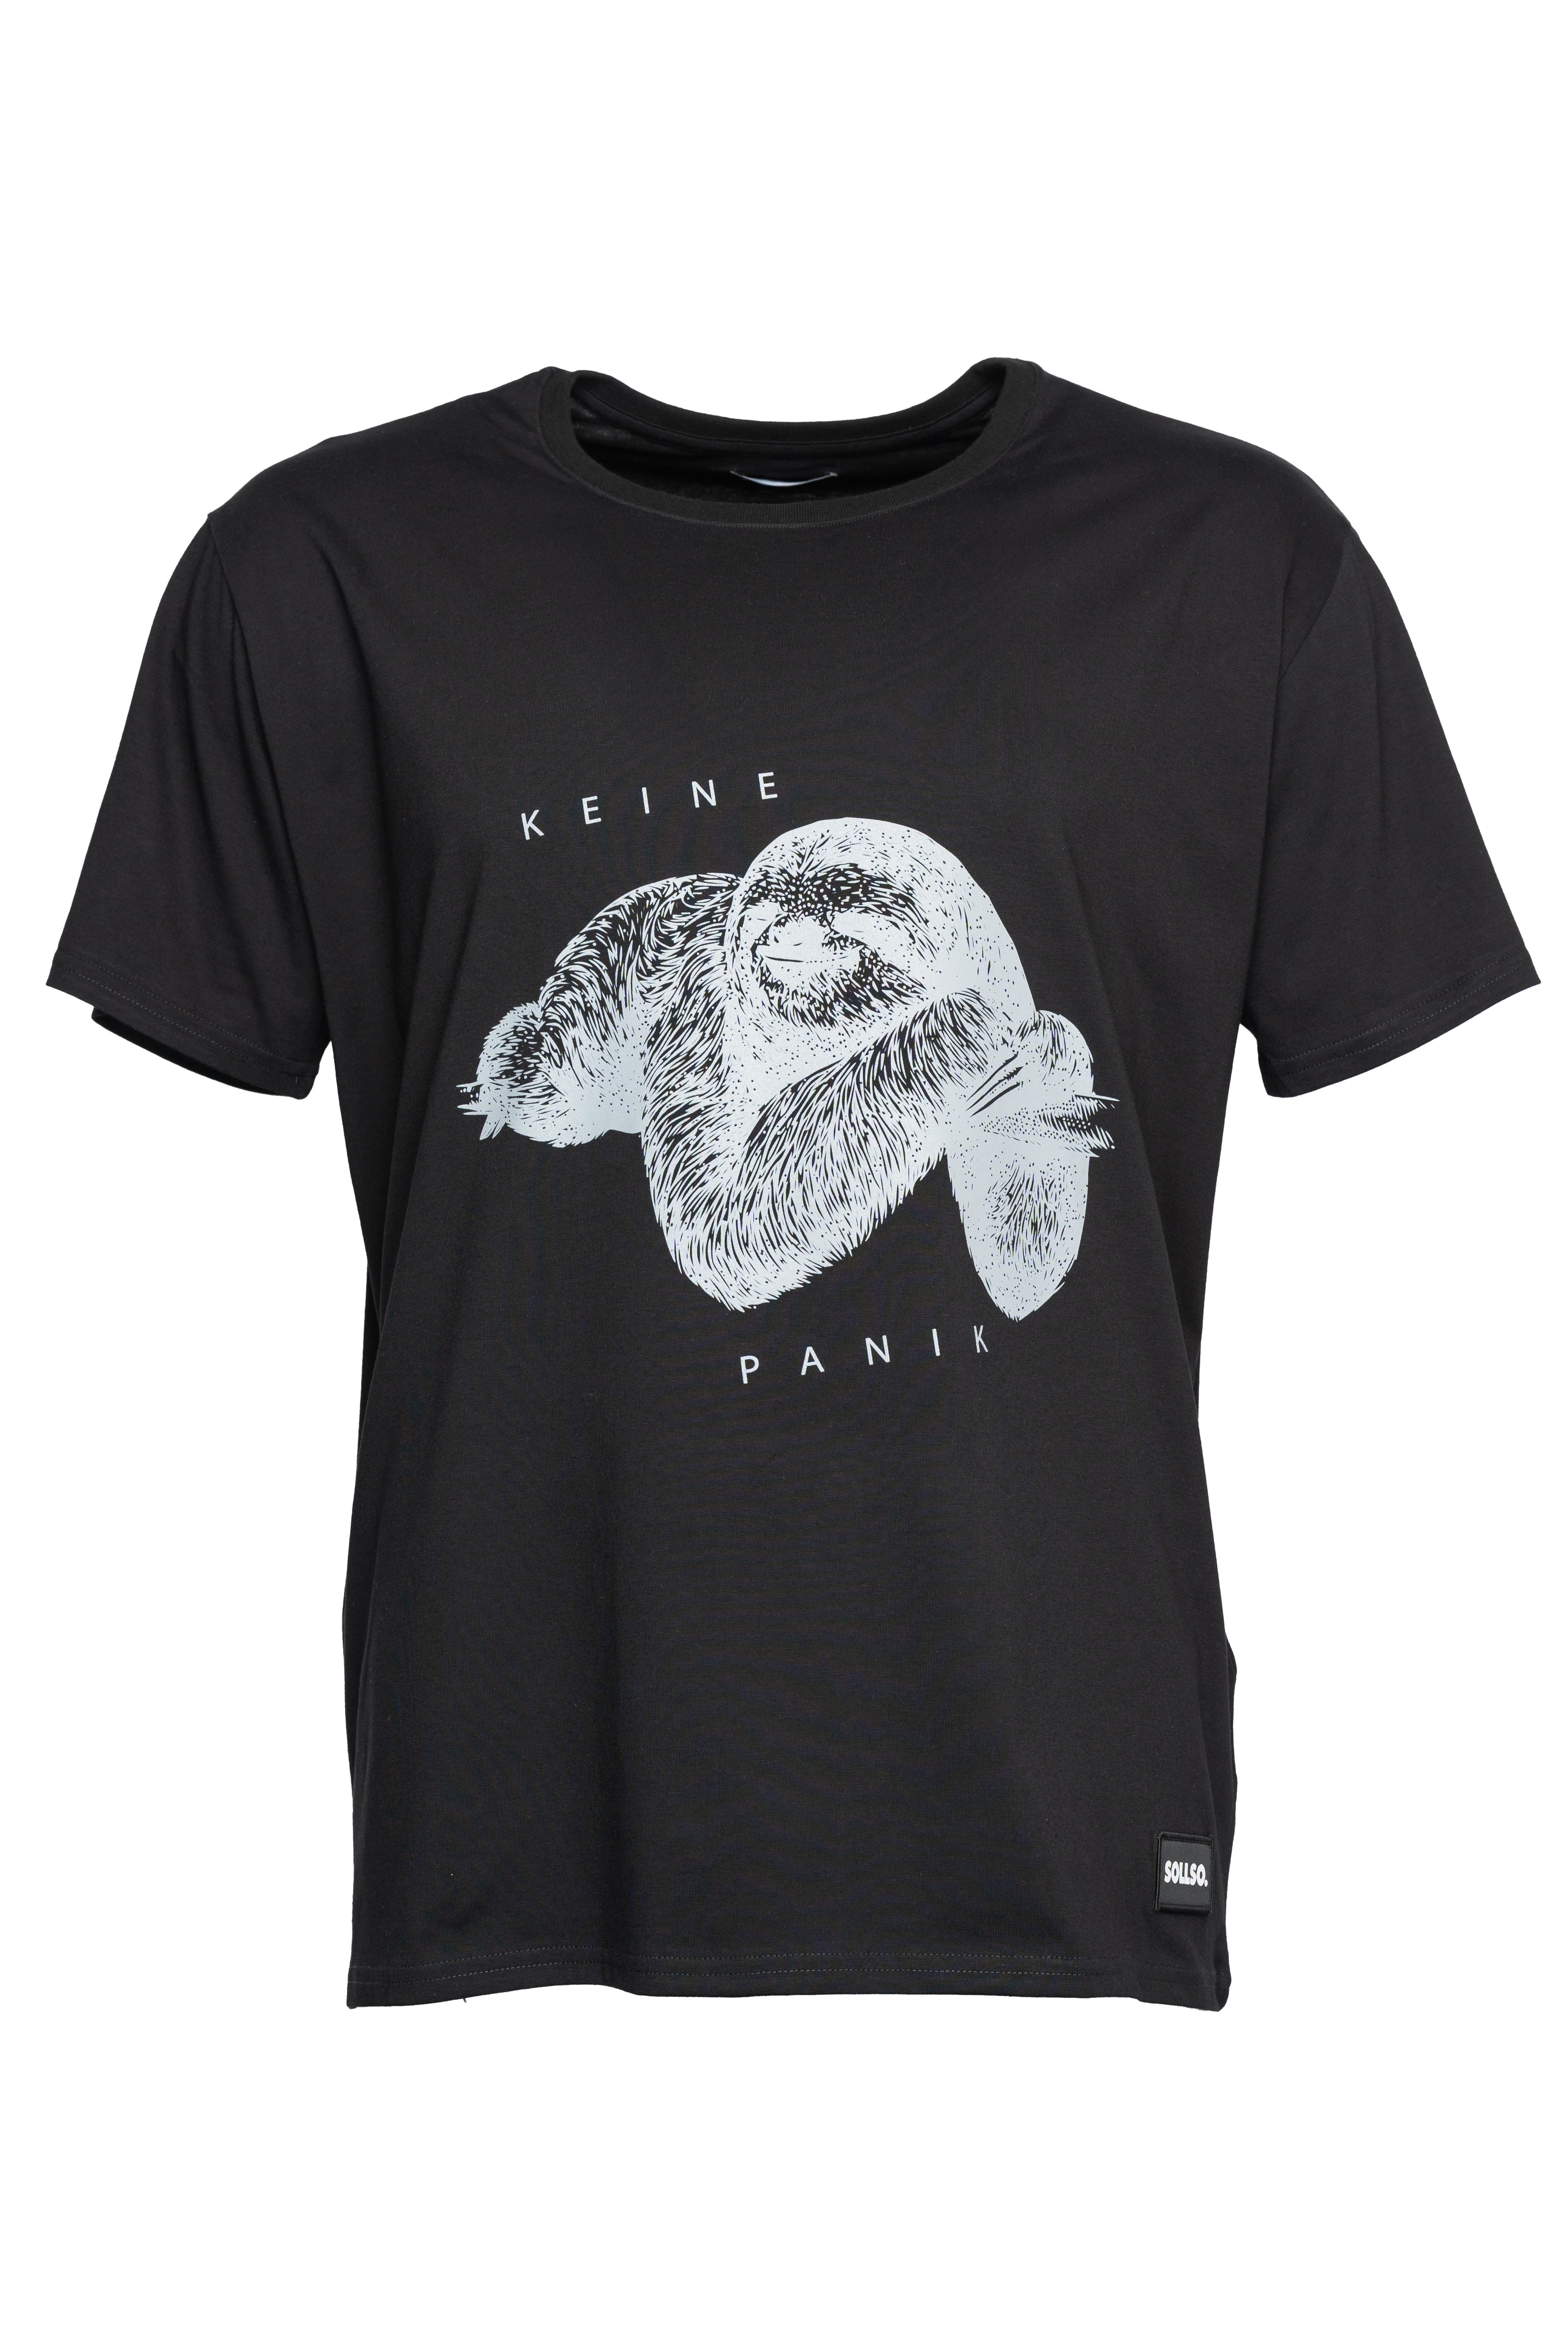 SOLLSO. T-Shirt "Keine Panik Faultier", Farbe Dark Black, Größe 6XL